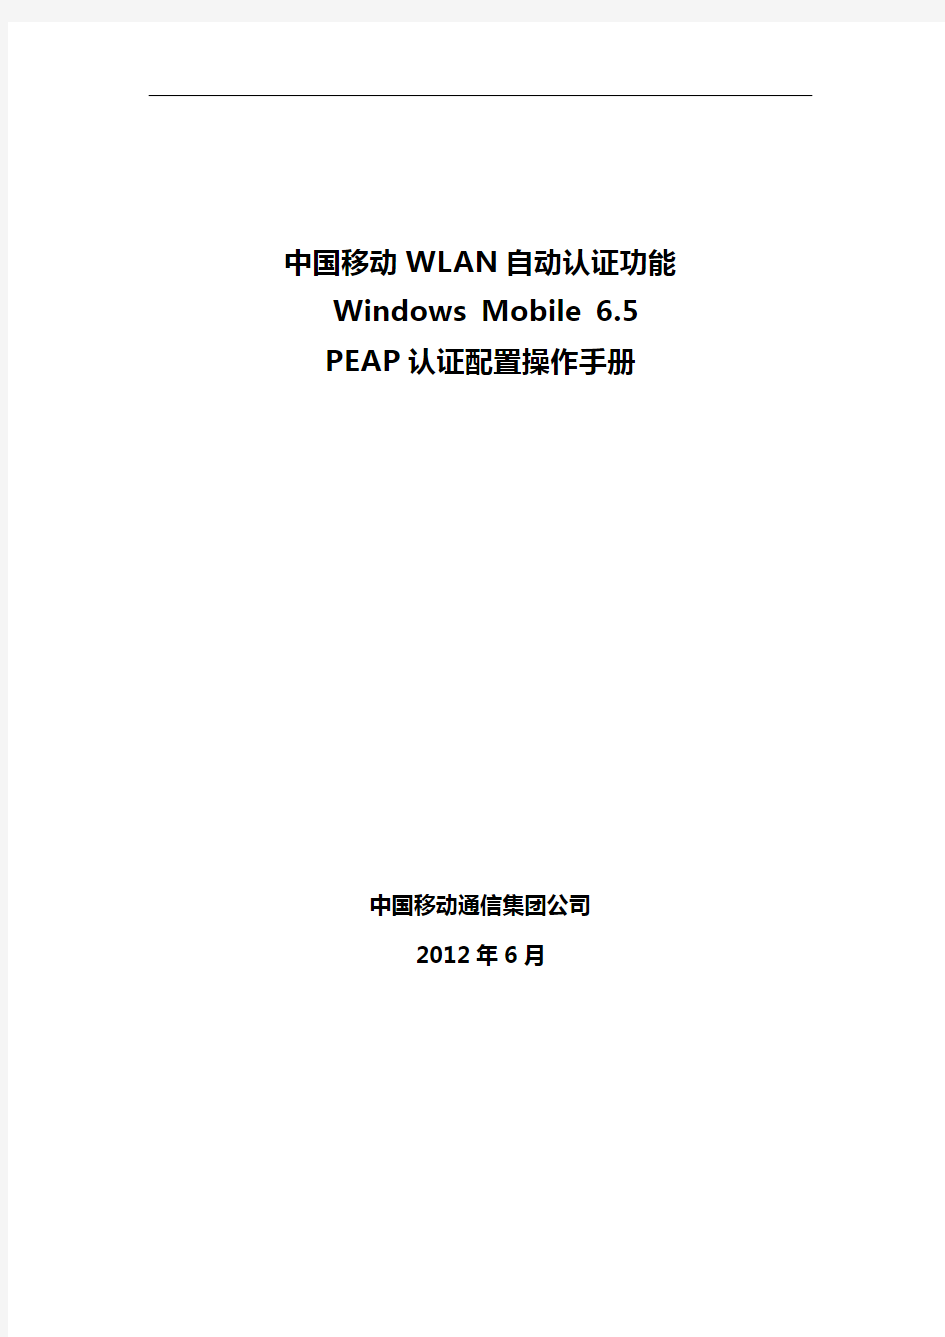 中国移动WLAN自动认证功能